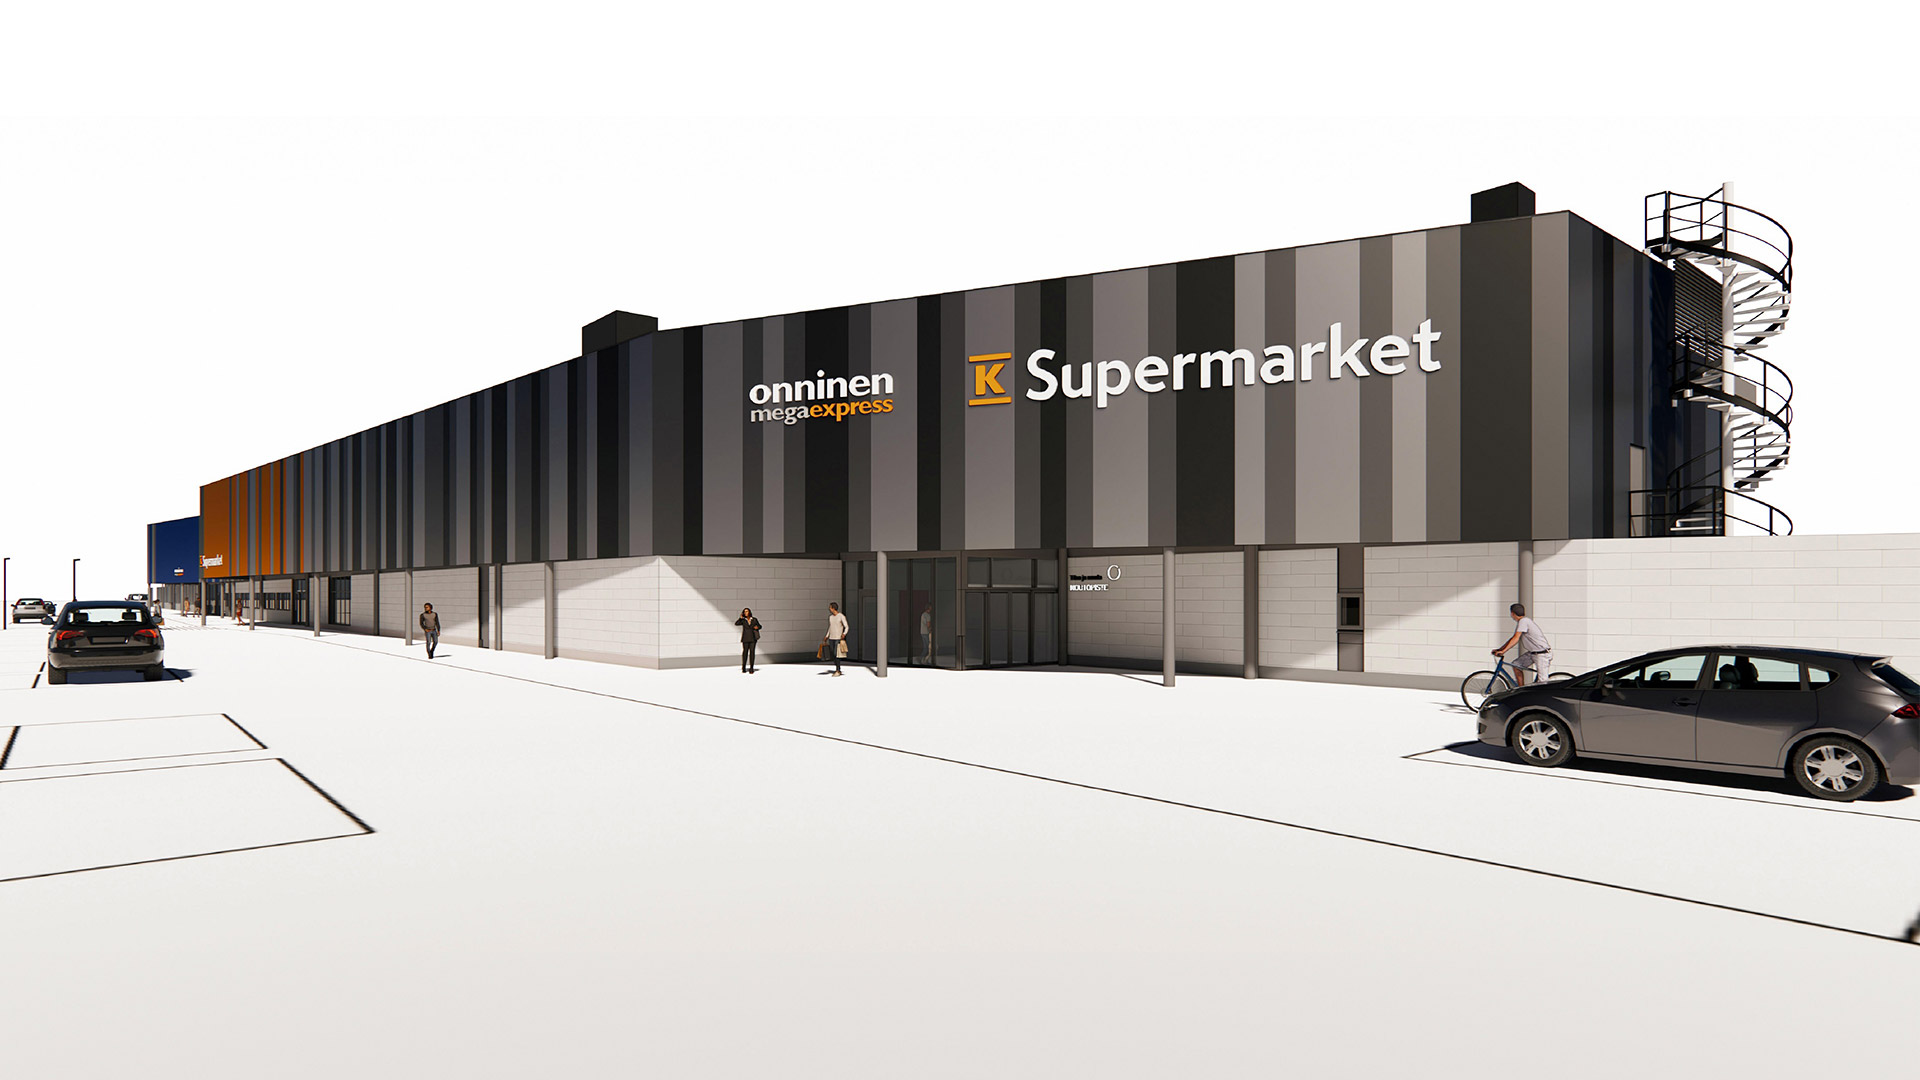 Varte rakentaa Keskolle supermarketin ja myymälän Espoon Mikkelilään